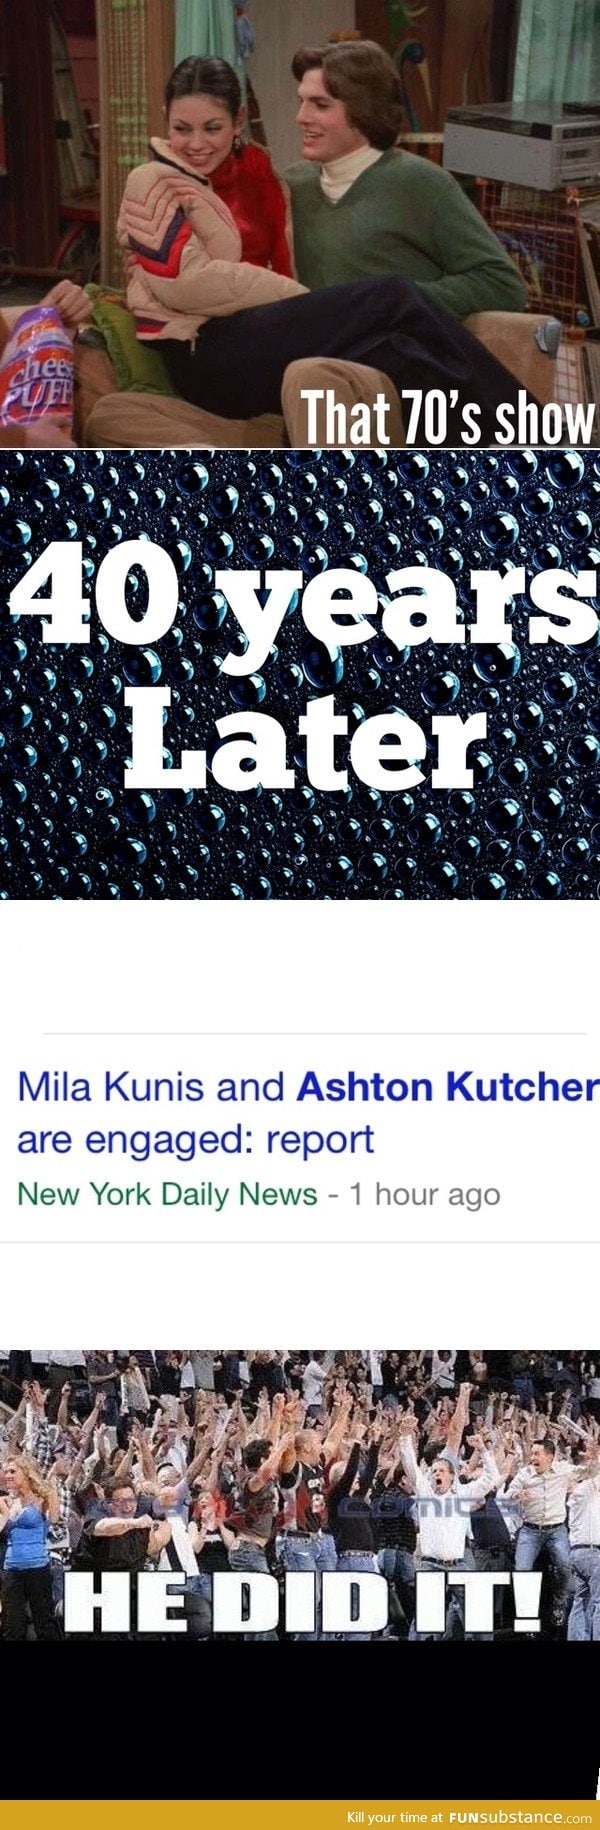 Mila Kunis and Ashton Kutcher are engaged